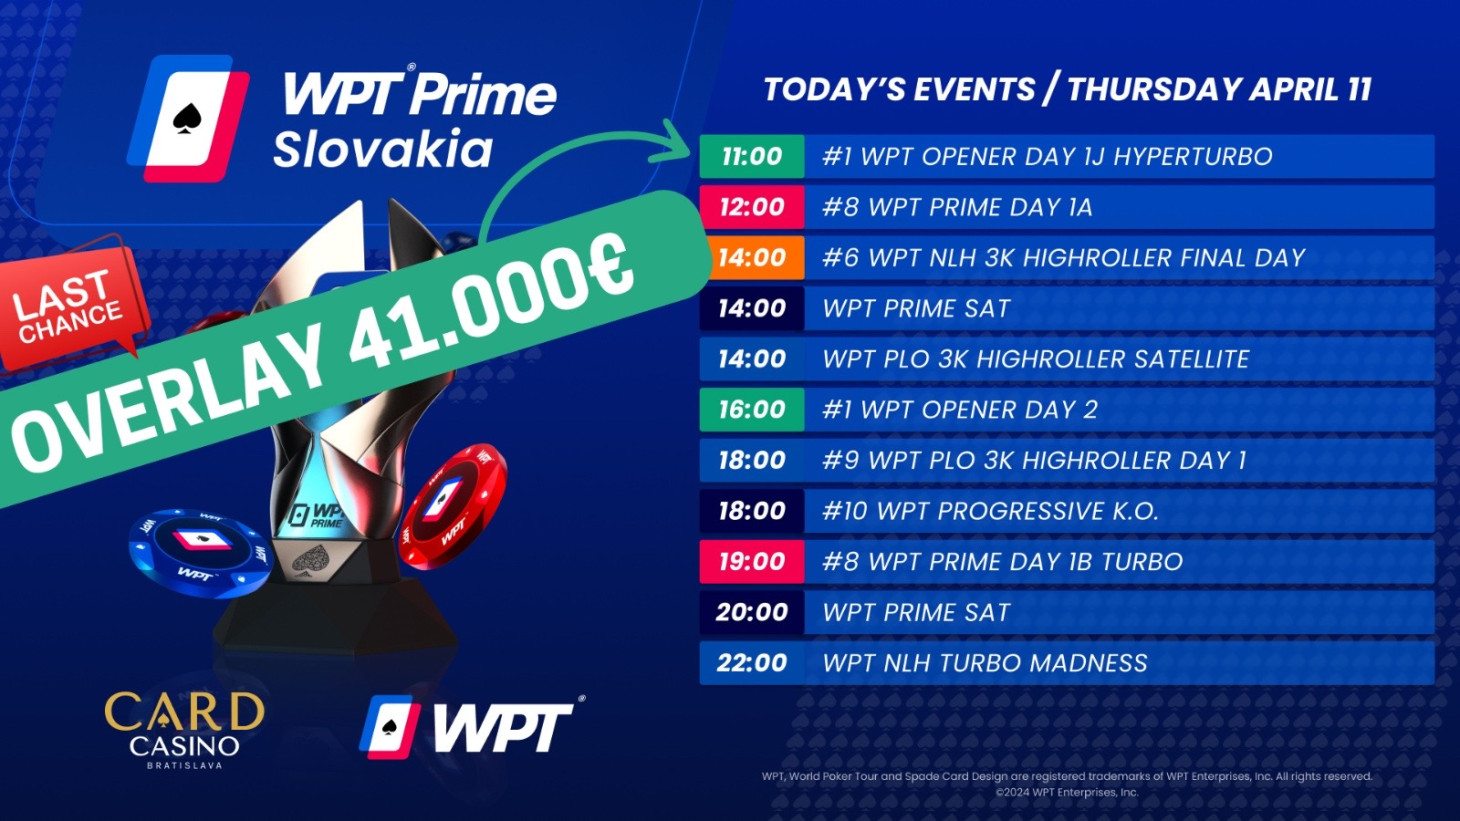 Obrovský OVERLAY v prvé části festivalu WPT. Vo vzduchu je takmer 41.000€!